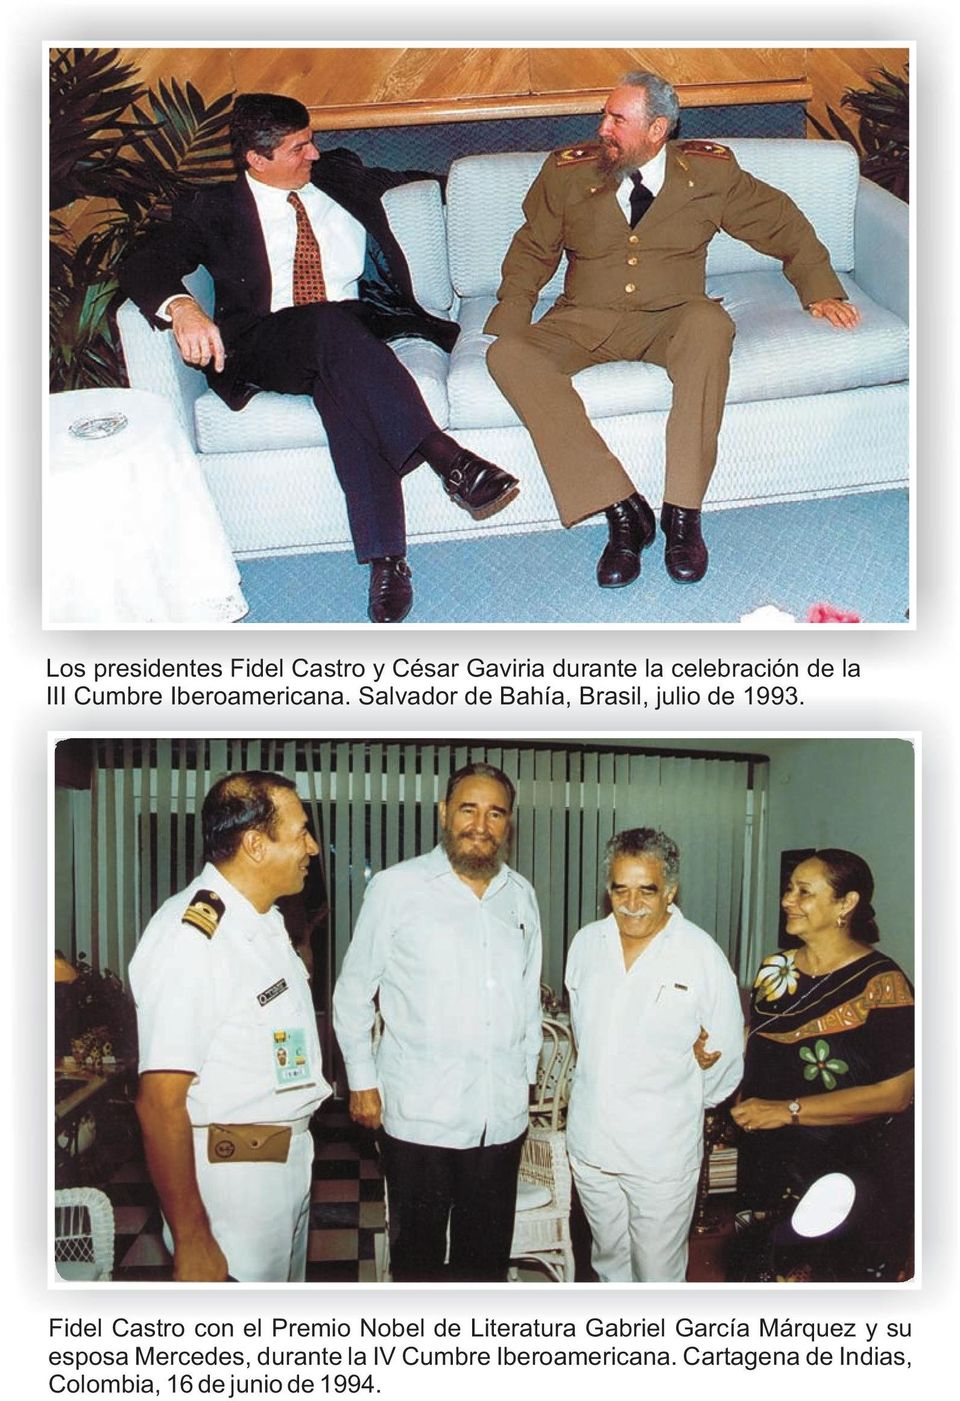 Fidel Castro con el Premio Nobel de Literatura Gabriel García Márquez y su